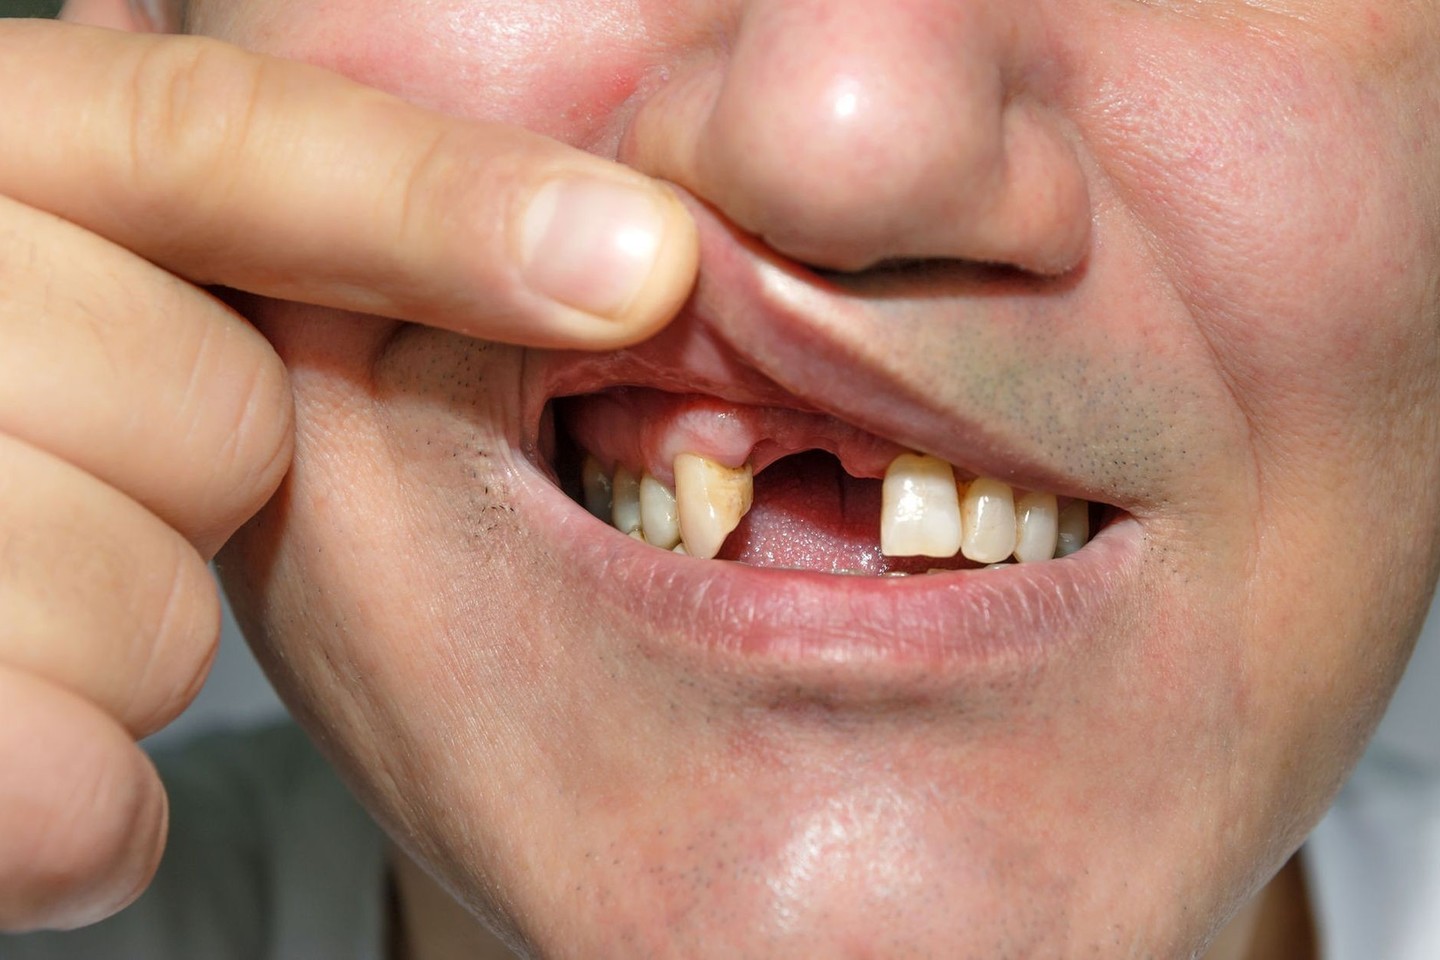 Išsimušus dantį ir laiku nesikreipus į burnos chirurgą, pacientas rizikuoja visai netekti danties<br>123rf.com